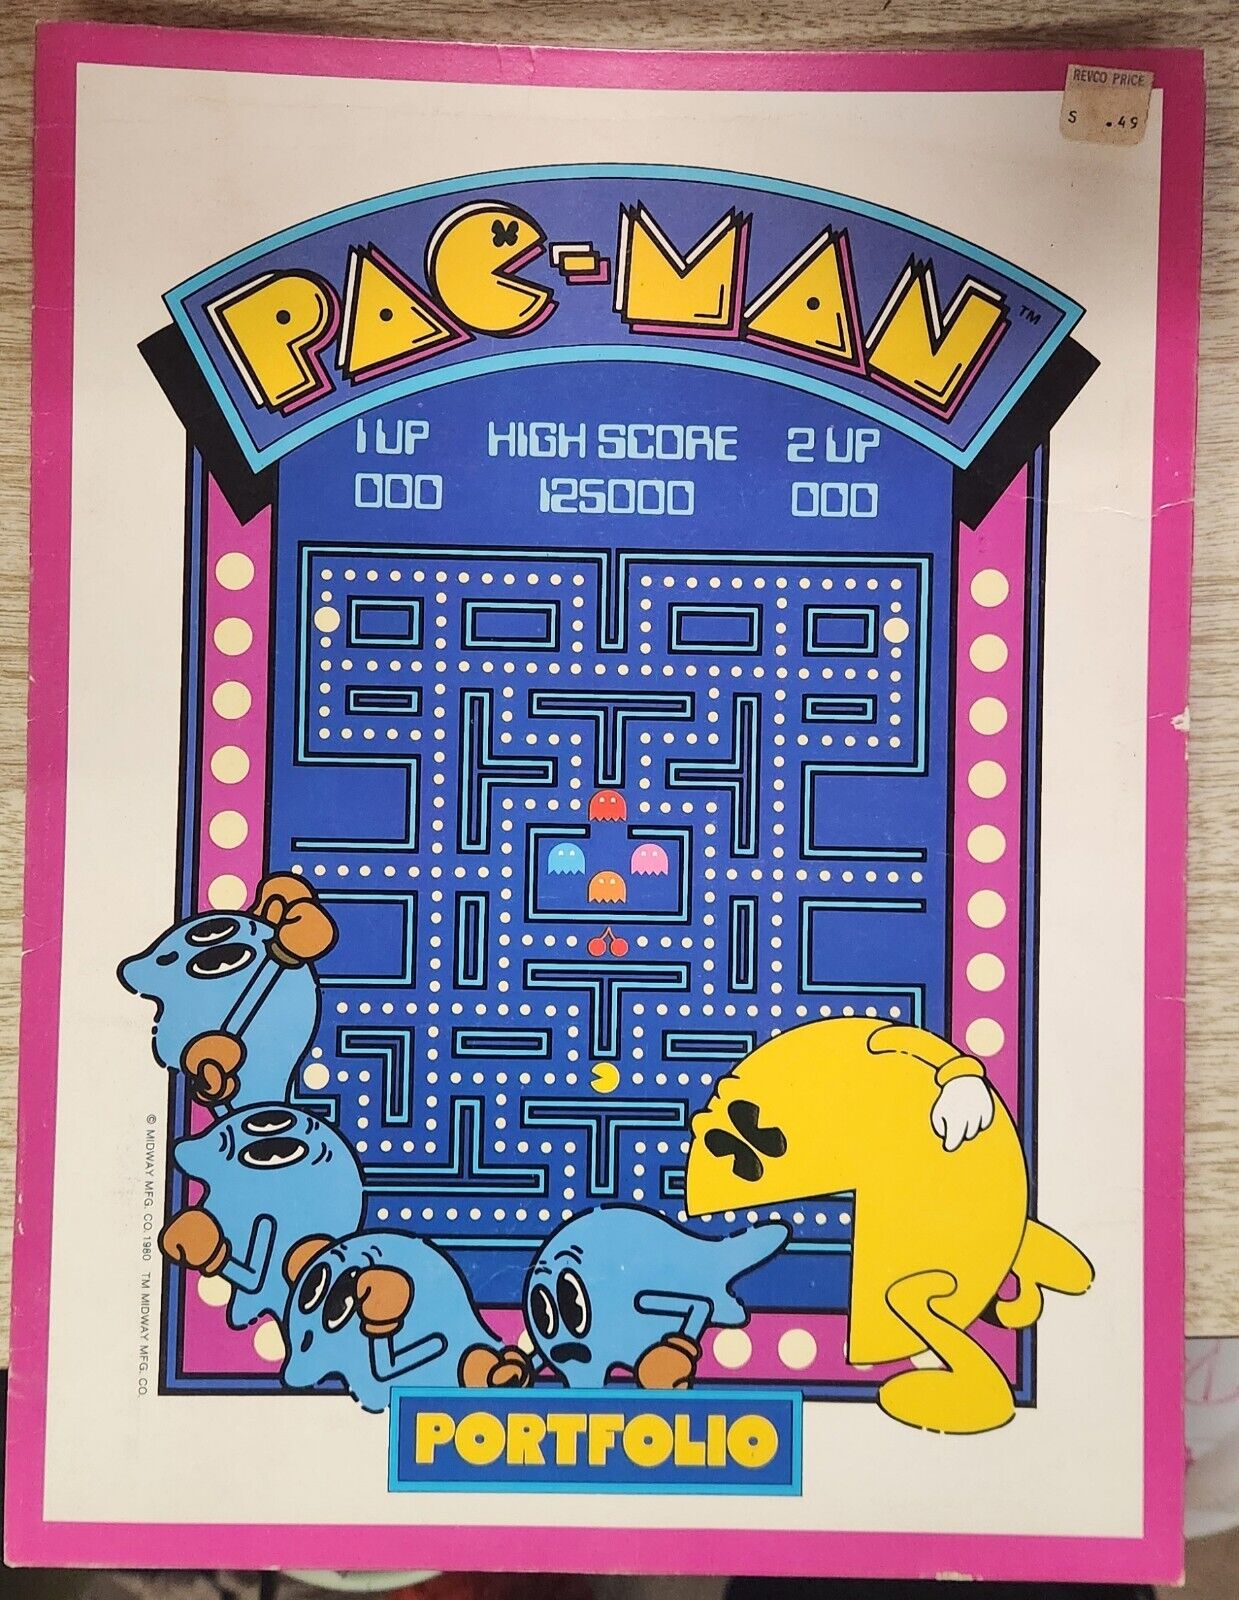 1980 PAC-MAN ARCADE SCHOOL PORTFOLIO by Midway Mfg.  NOS VTG